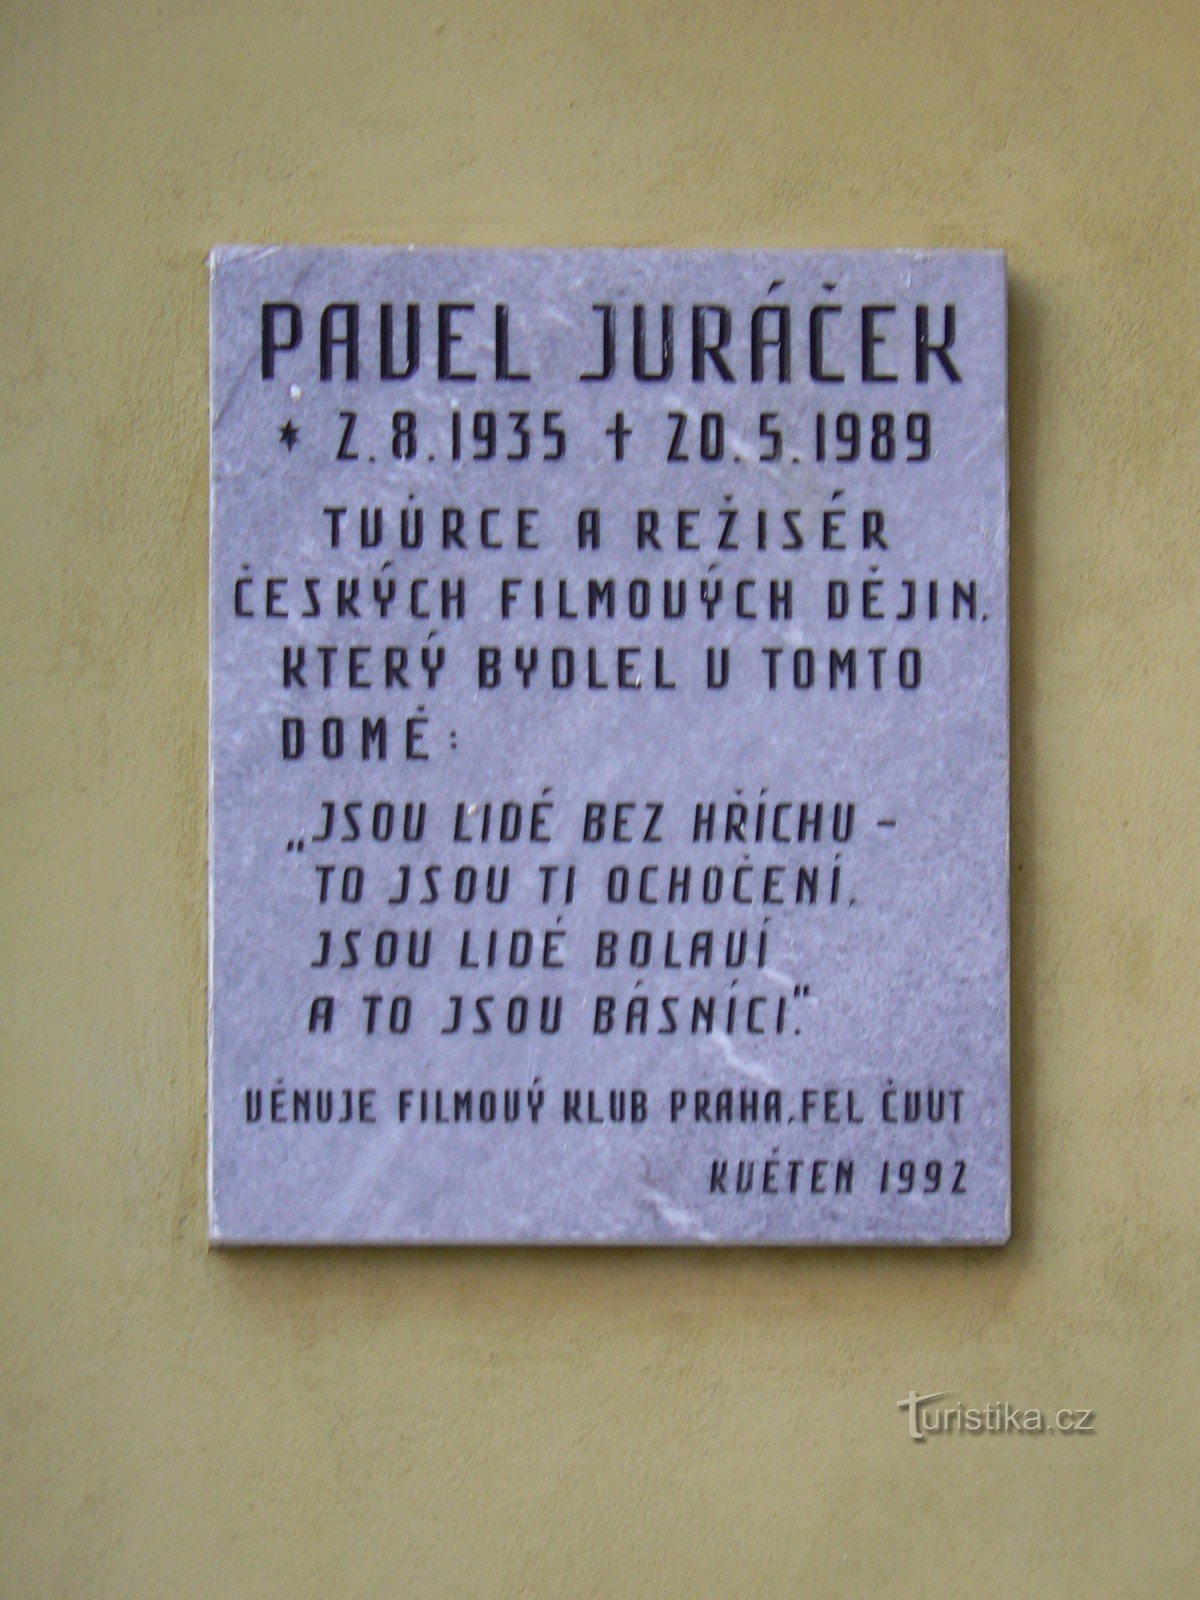 Placă memorială Pavel Juráček